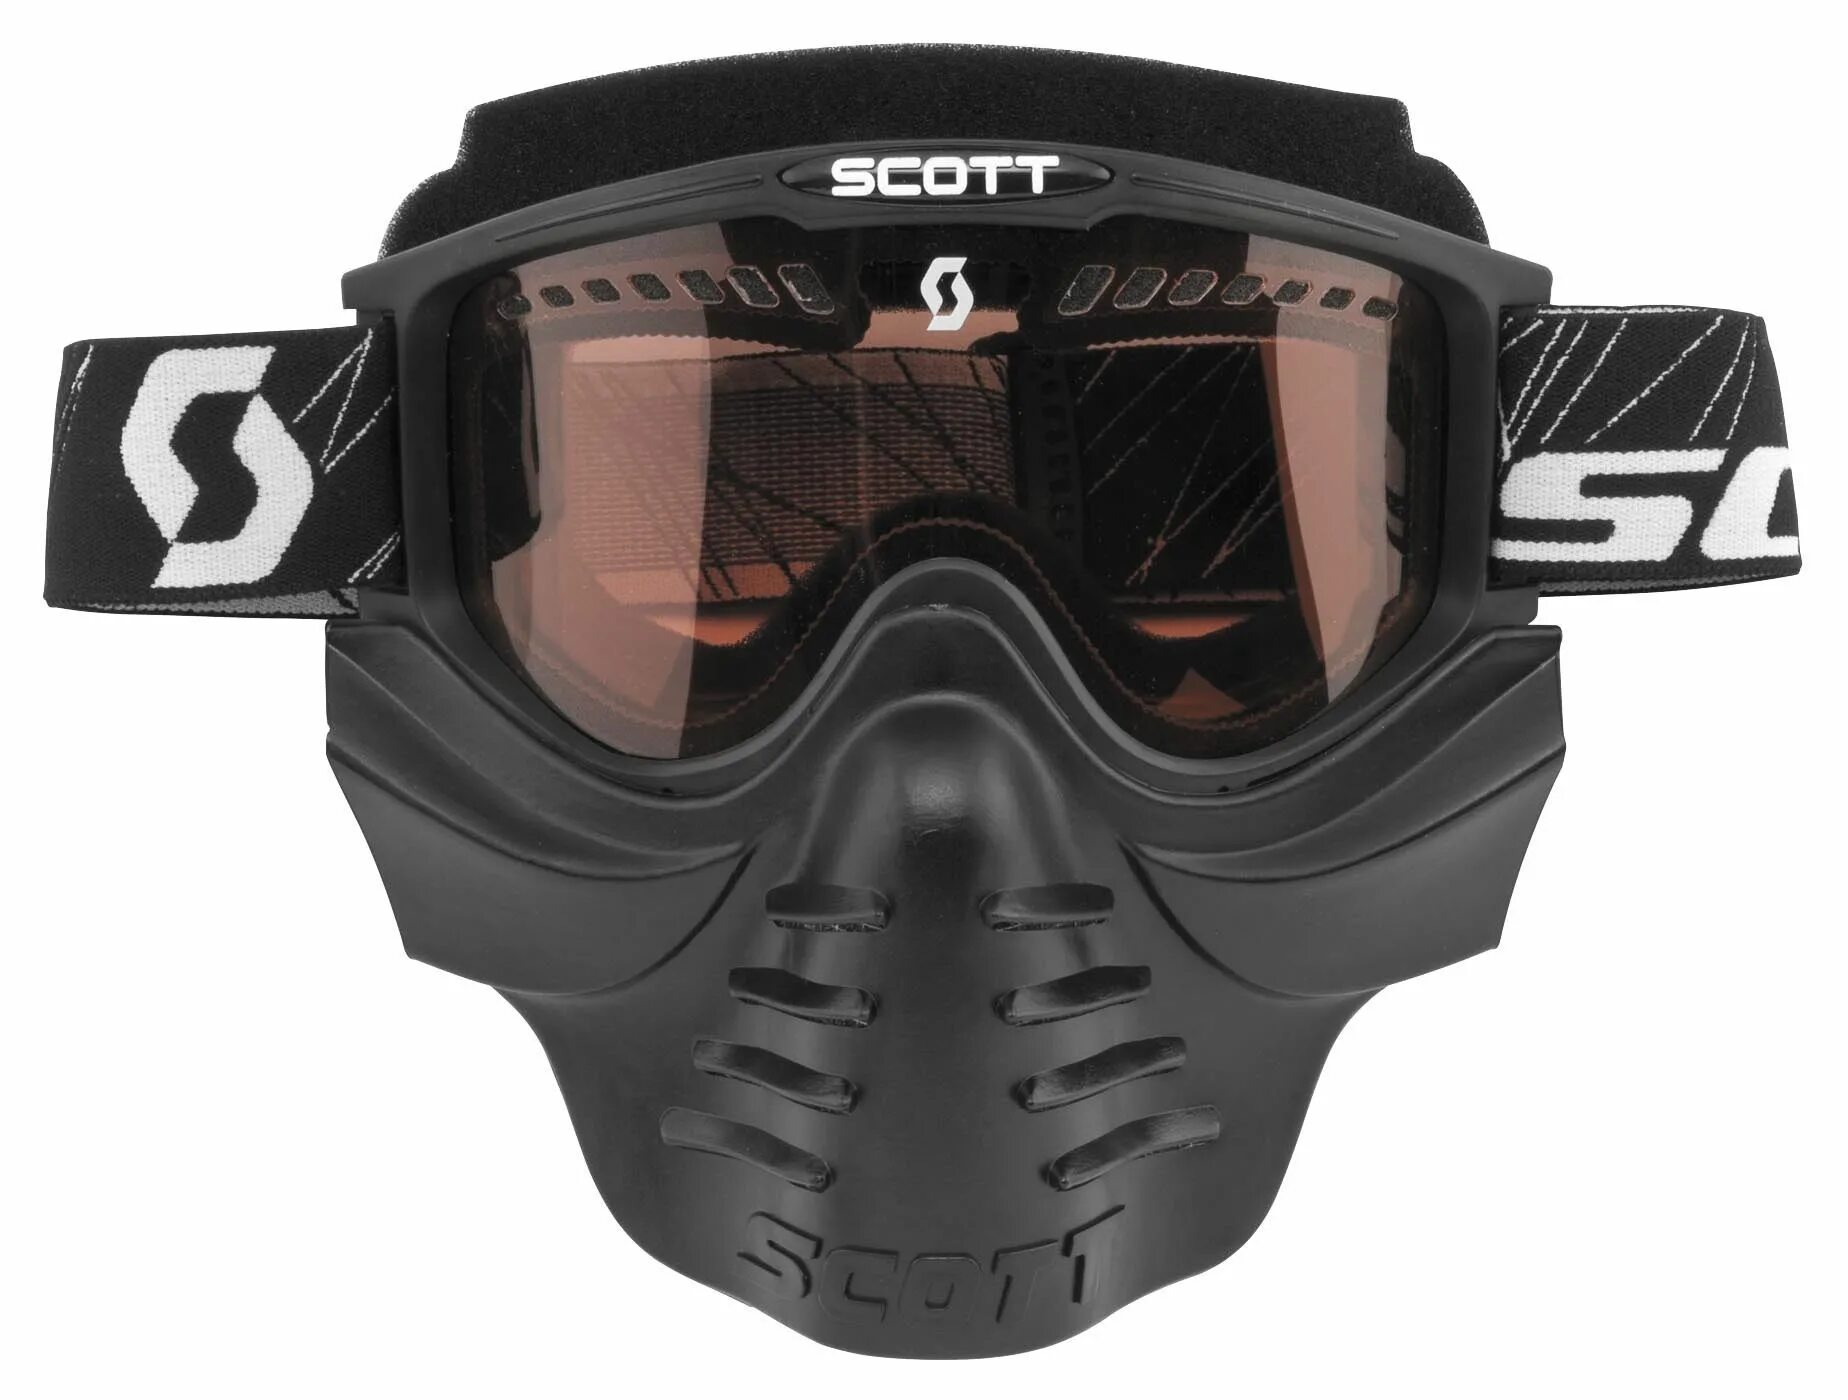 Очки маска купить. Scott 83x Safari Facemask. Scott очки 83x Safari Facemask (б/р,Black Yellow). Маска Scott Safari 83x. Очки маска Scott 83x Safari Facemask (Black Clear).